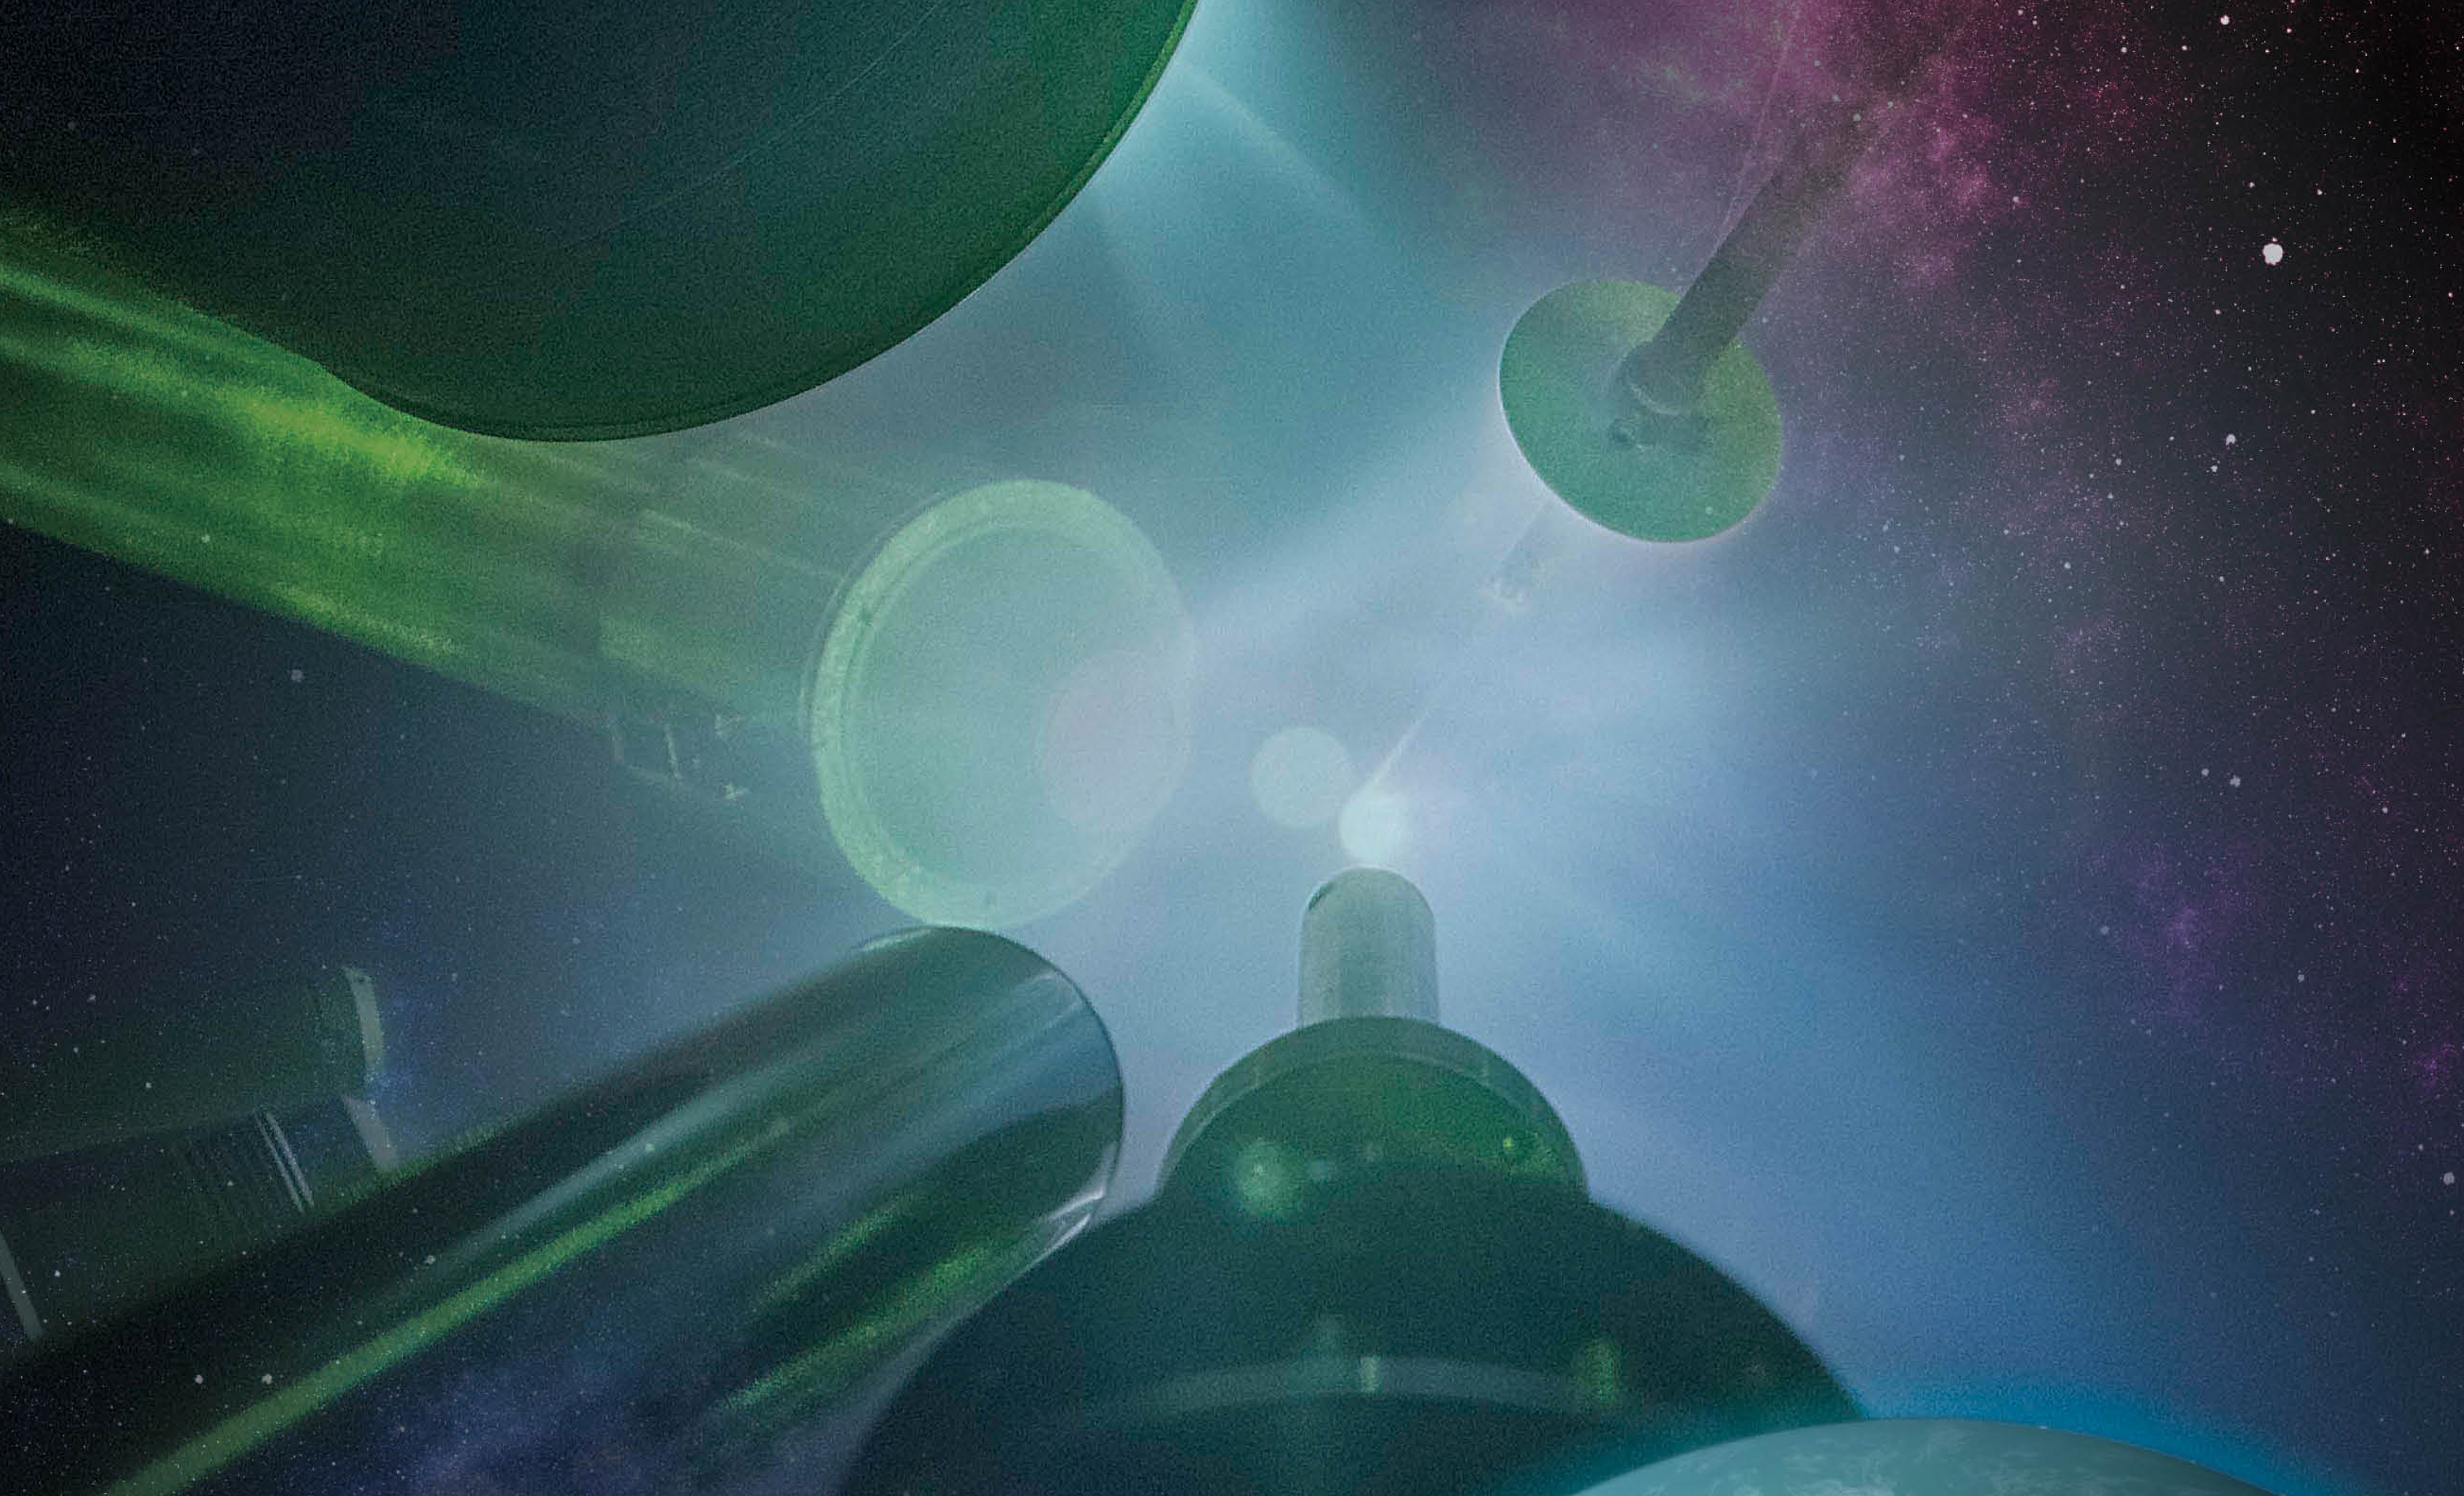 Un nuevo procedimiento mediante láser ha permitido conocer las propiedades de la stishovita a altas presiones, similares a las del interior de los planetas gigantes. Imagen: E. Kowaluk. Fuente: LLE.